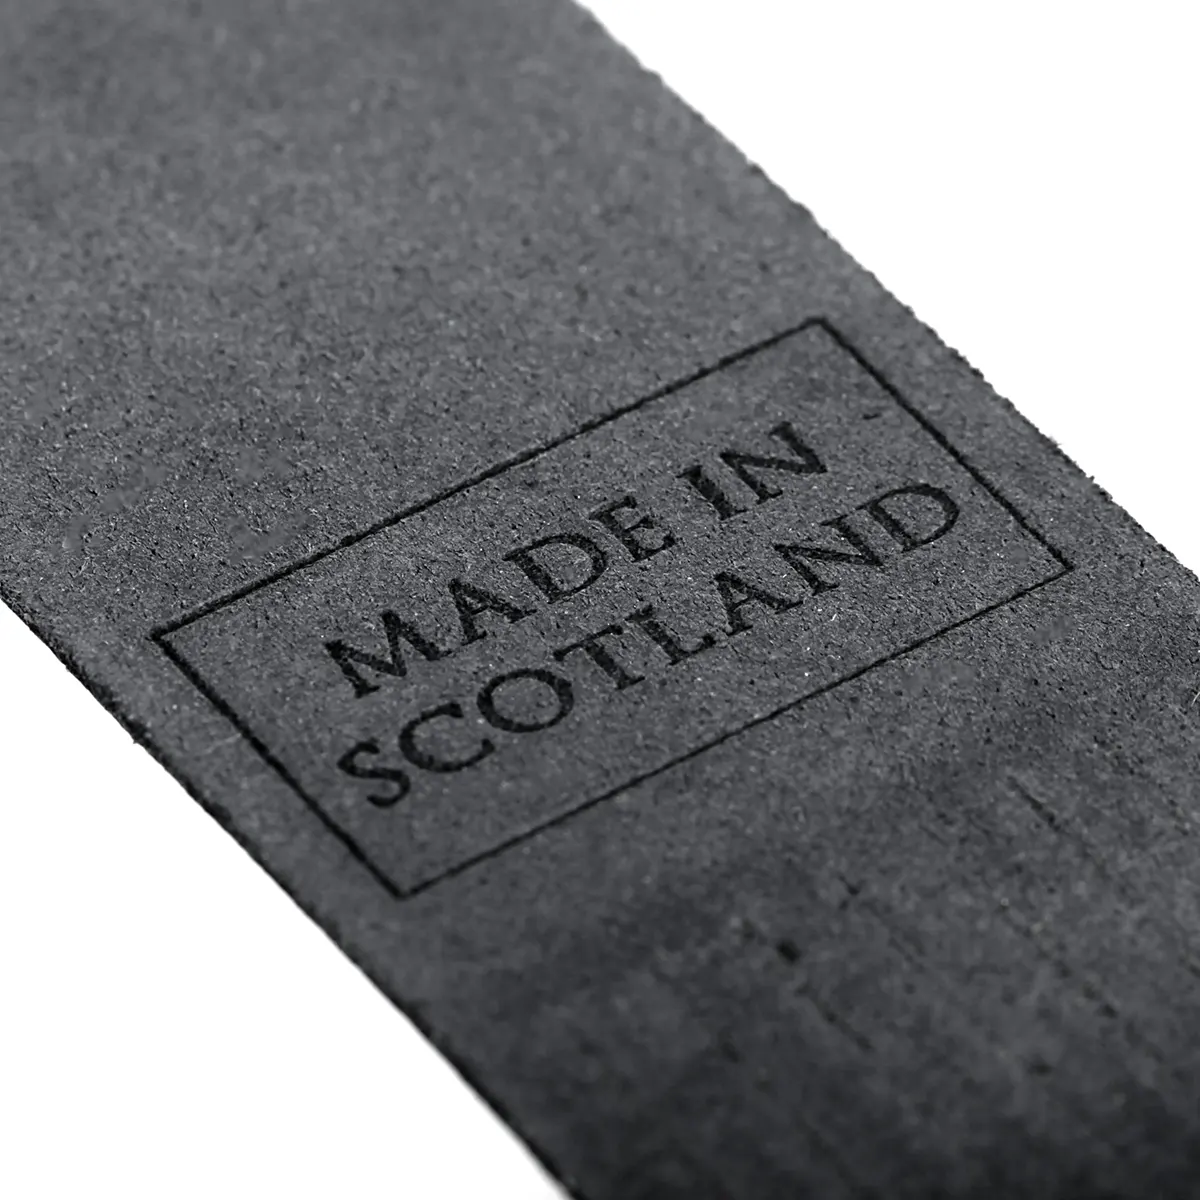 Oban - Lesezeichen aus Leder in Schwarz - Made in Scotland